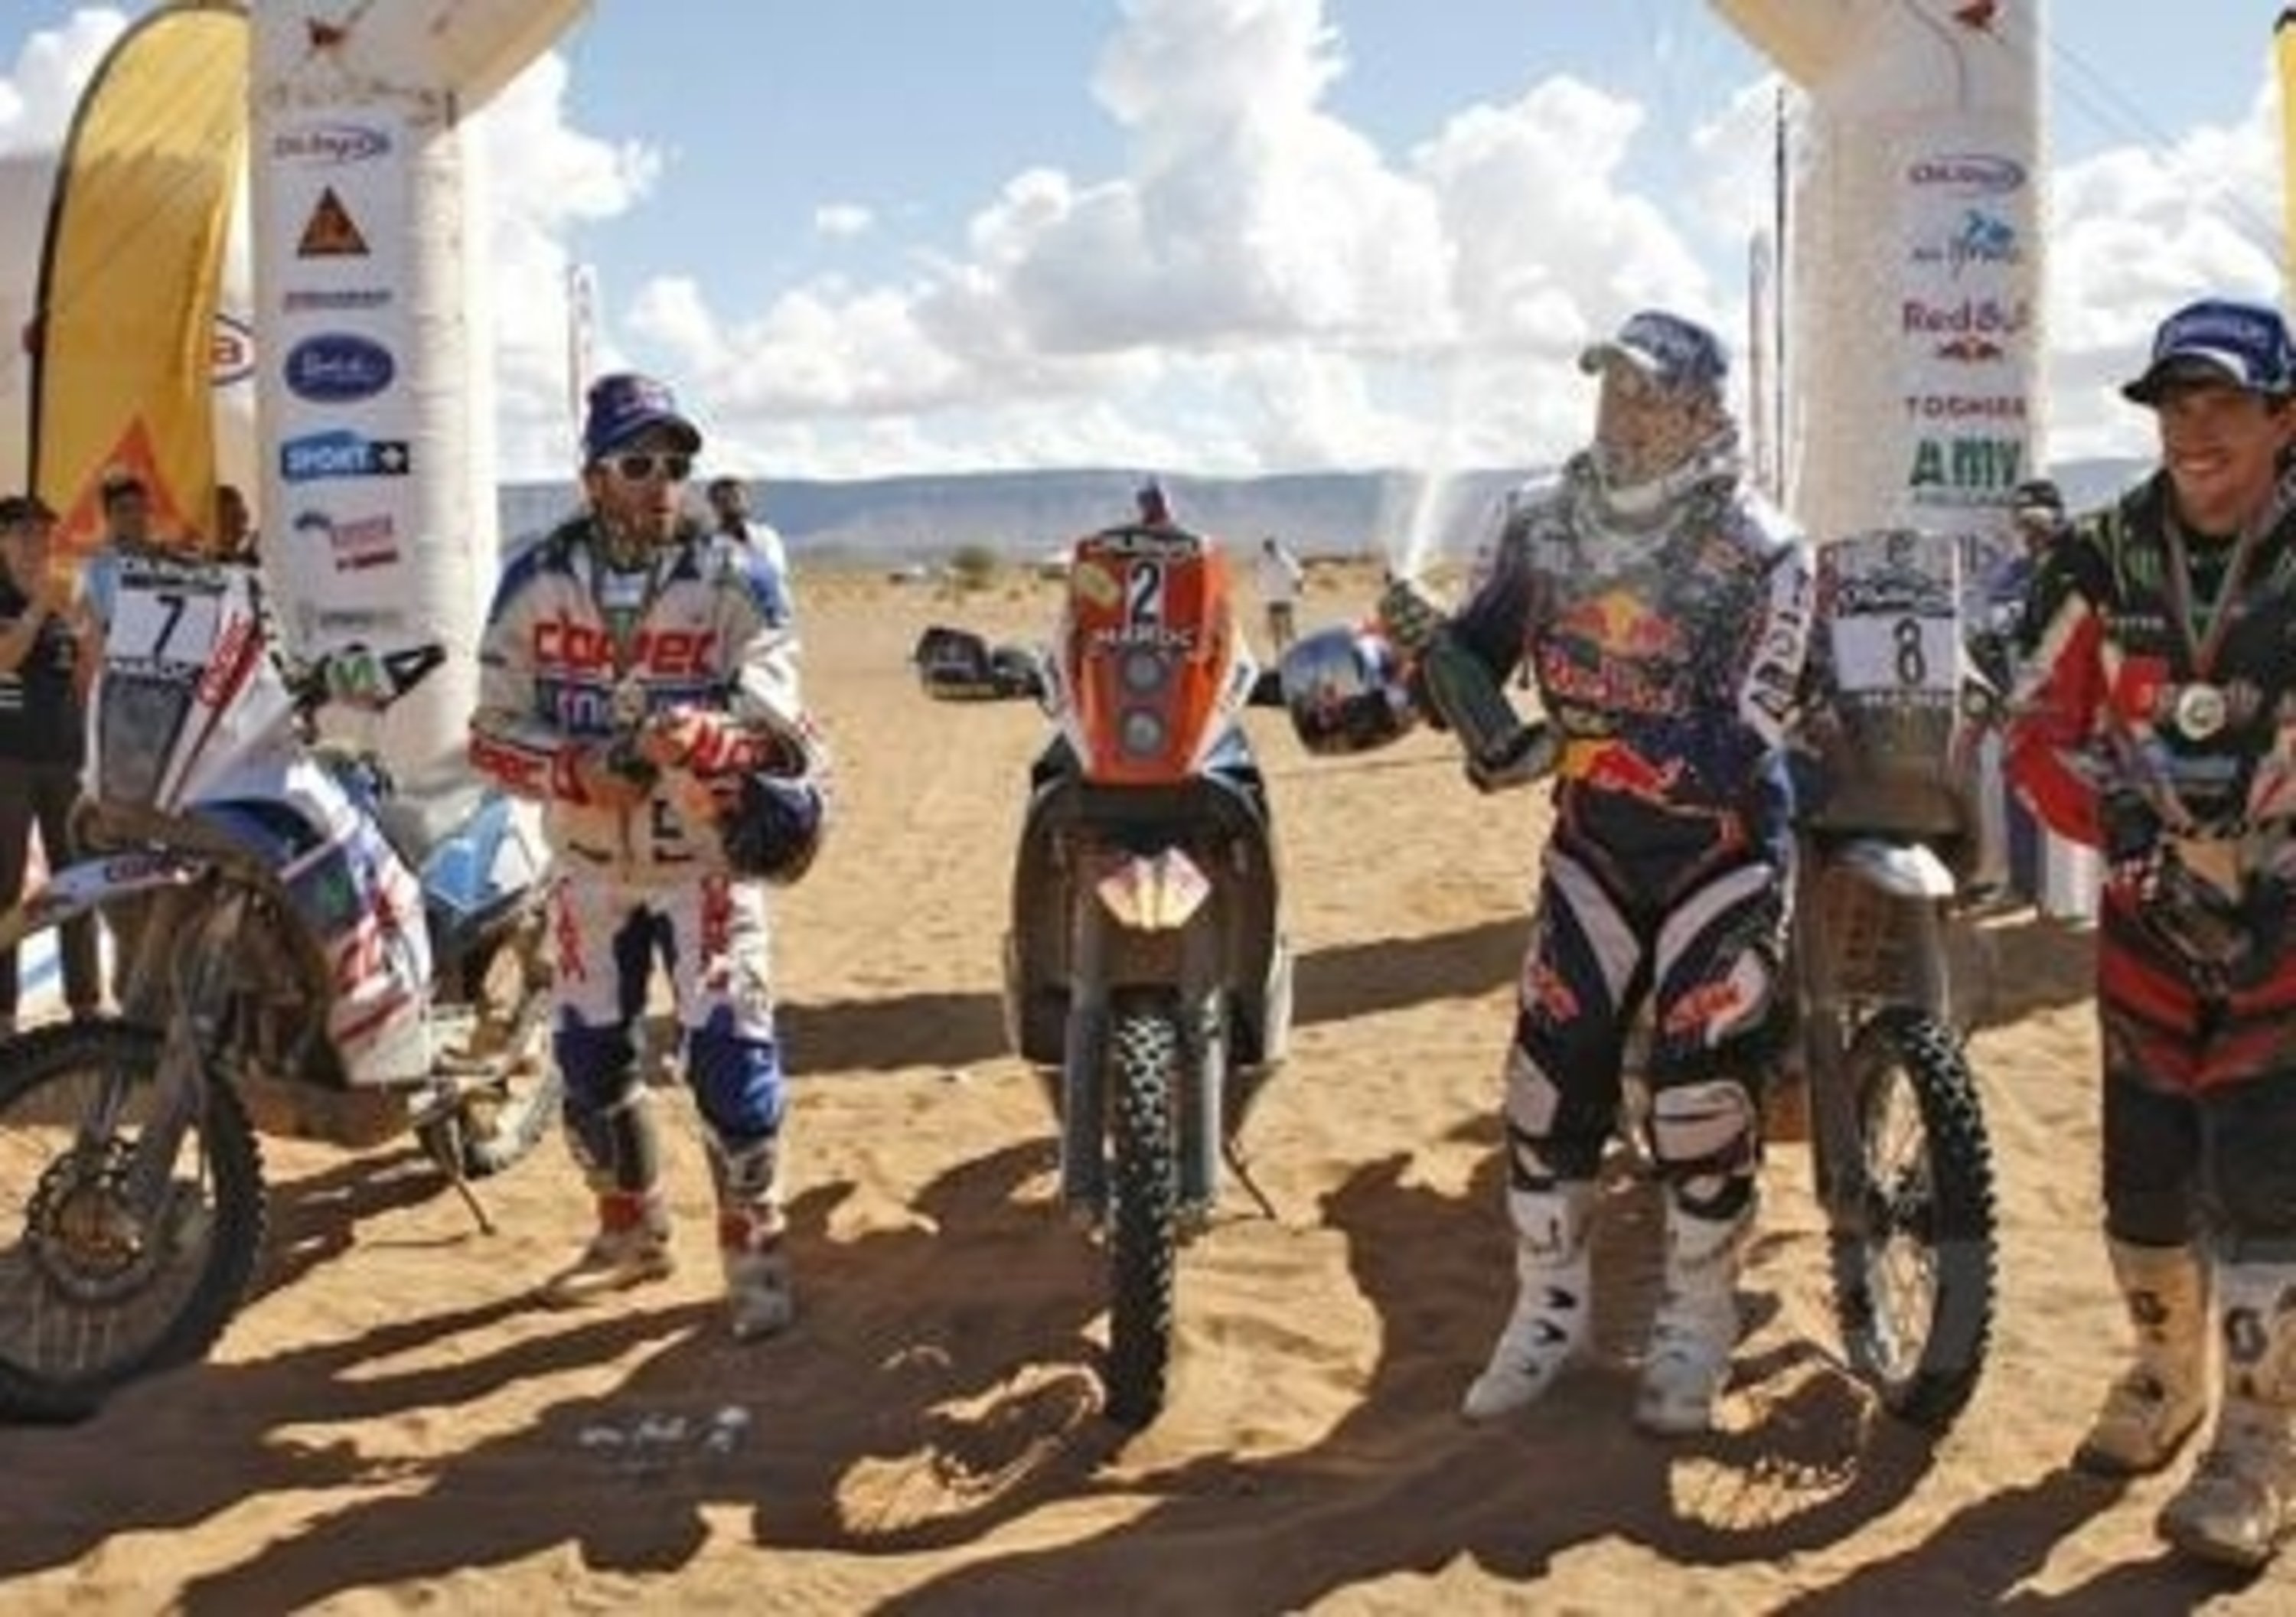 Cyril Despres vince il Rally del Marocco. Sul podio finale anche Joan Barreda e Francisco &ldquo;Chaleco&rdquo; Lopez